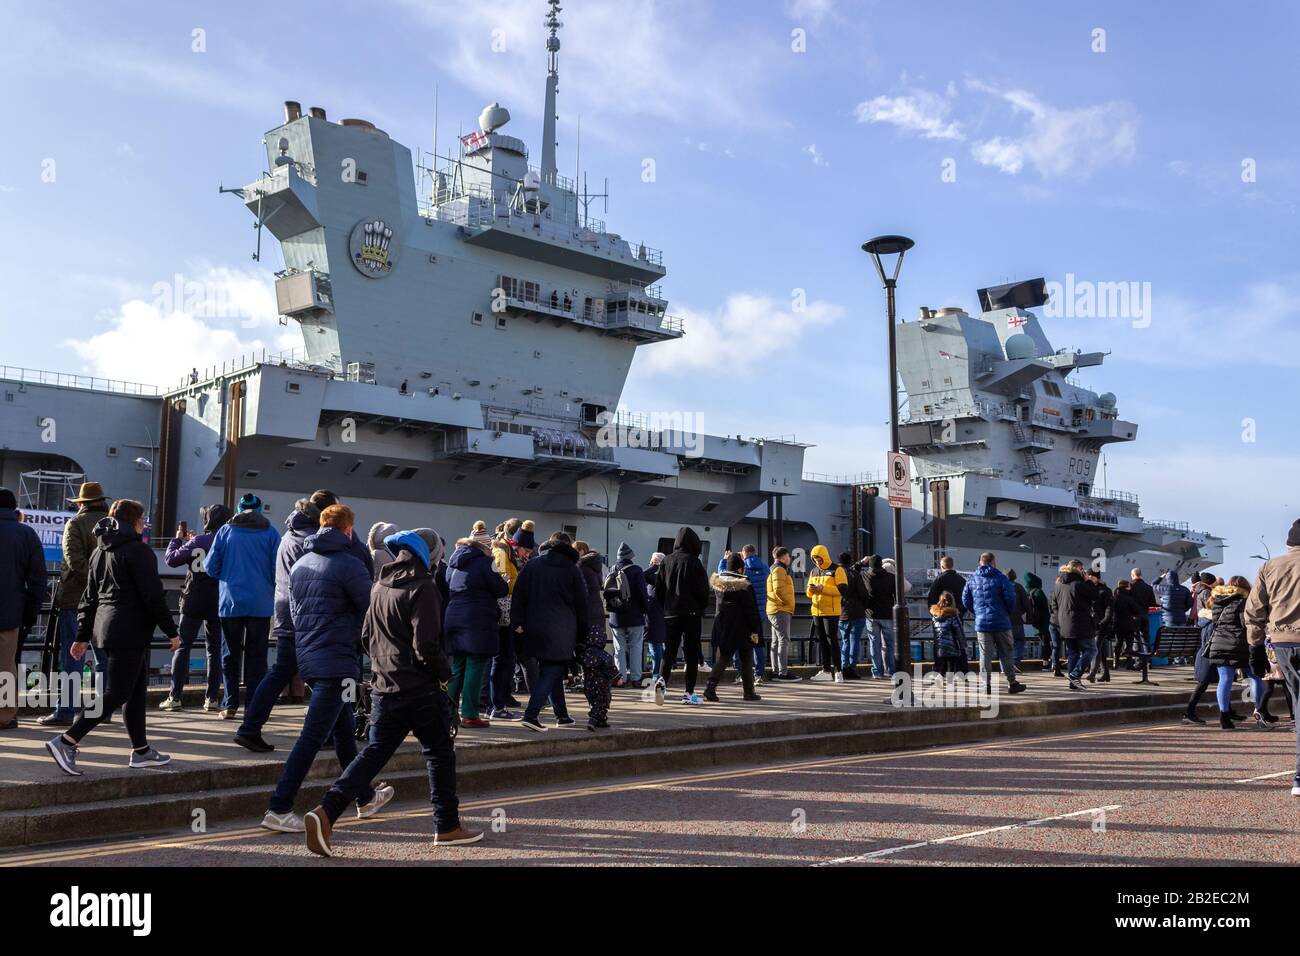 Menschenmassen, die den Flugzeugträger "HMS Prince of Wales" am Princes Dock, Liverpool, sehen Stockfoto